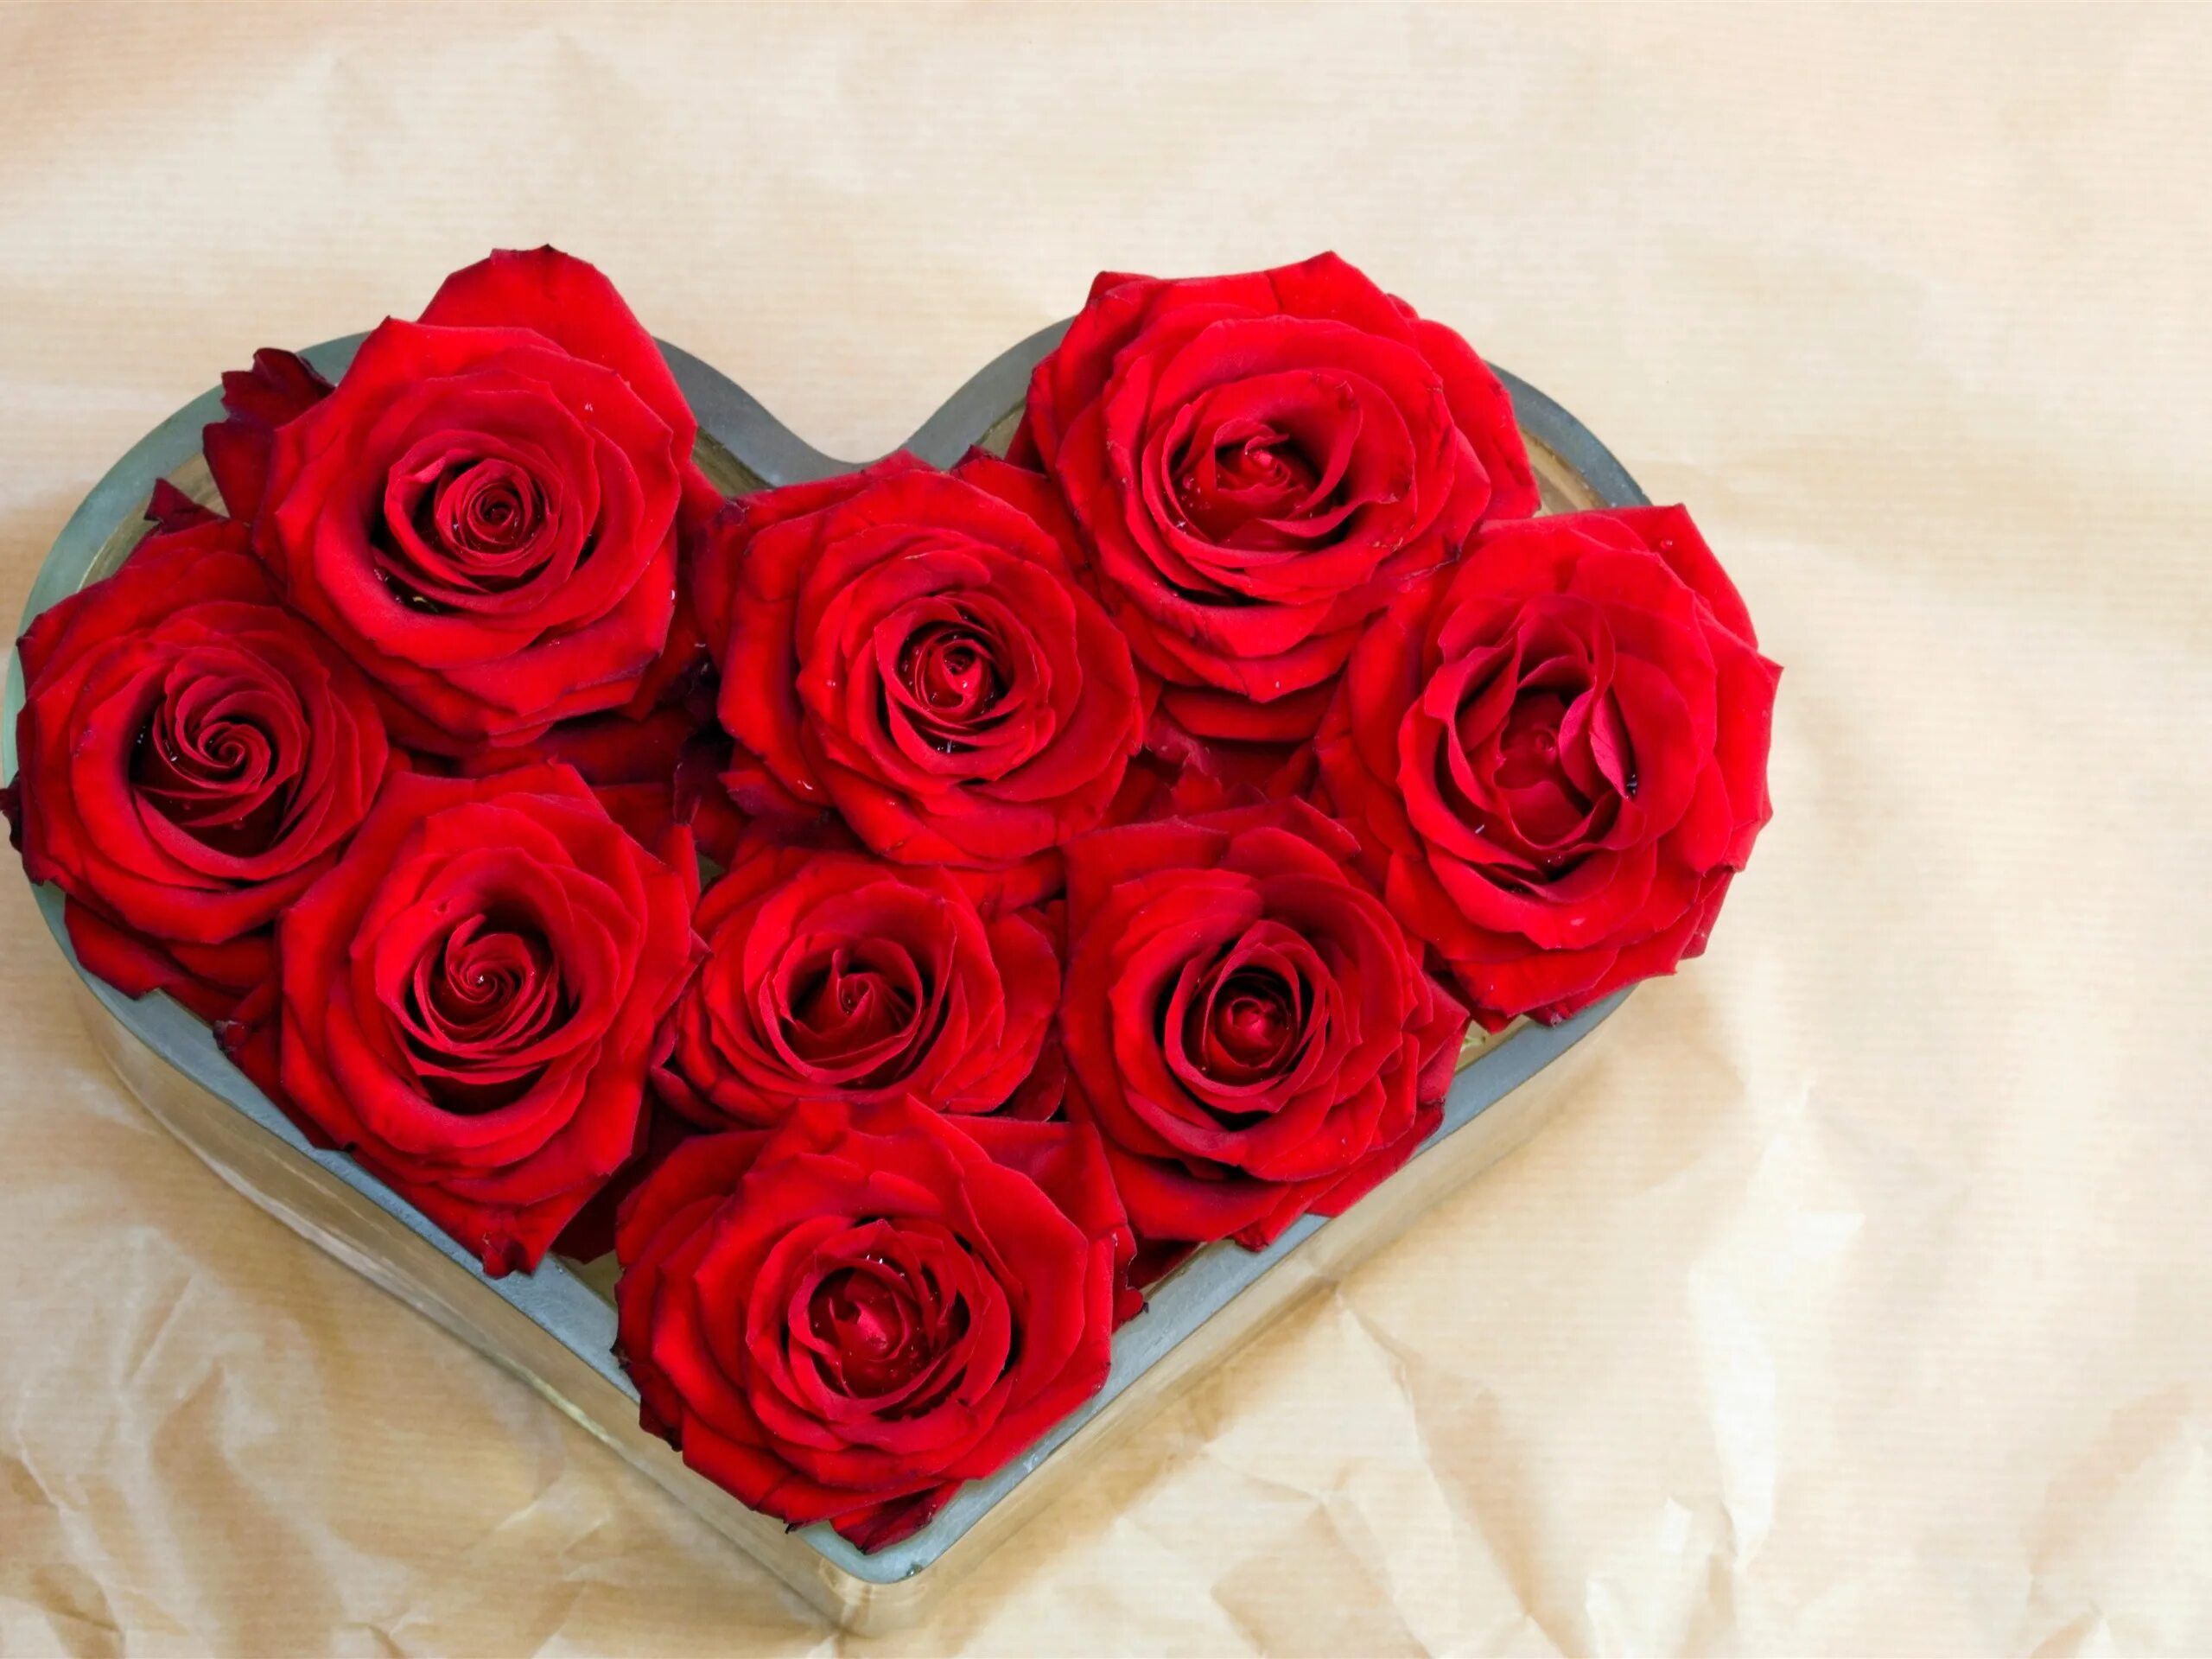 Кирмизи гуллар. Красные розы. Букет роз. Красивый букет роз. Букет красных роз.